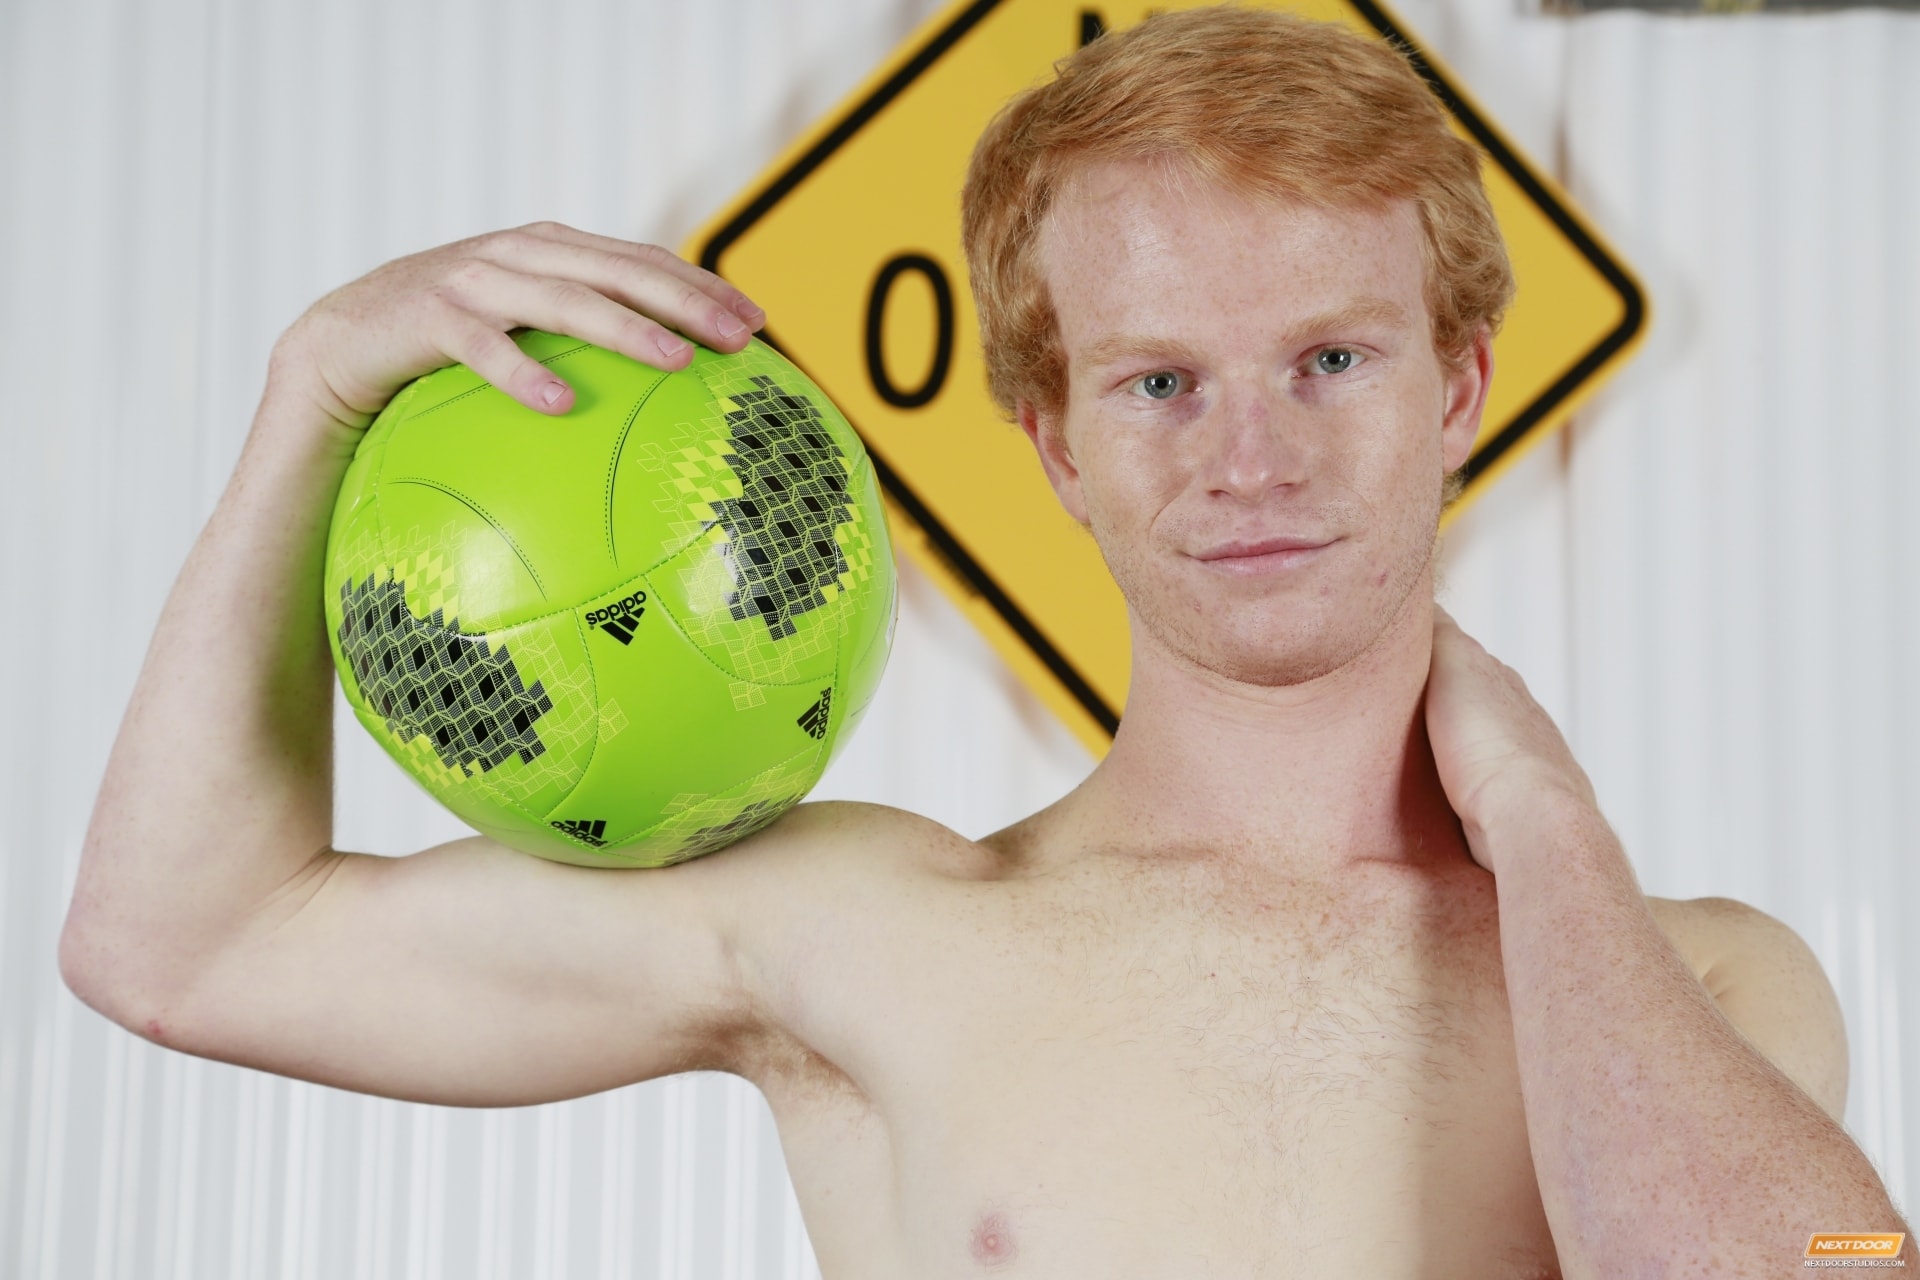 Next Door Studios 'Soccer Pals' starring Colby Klein (Photo 27)